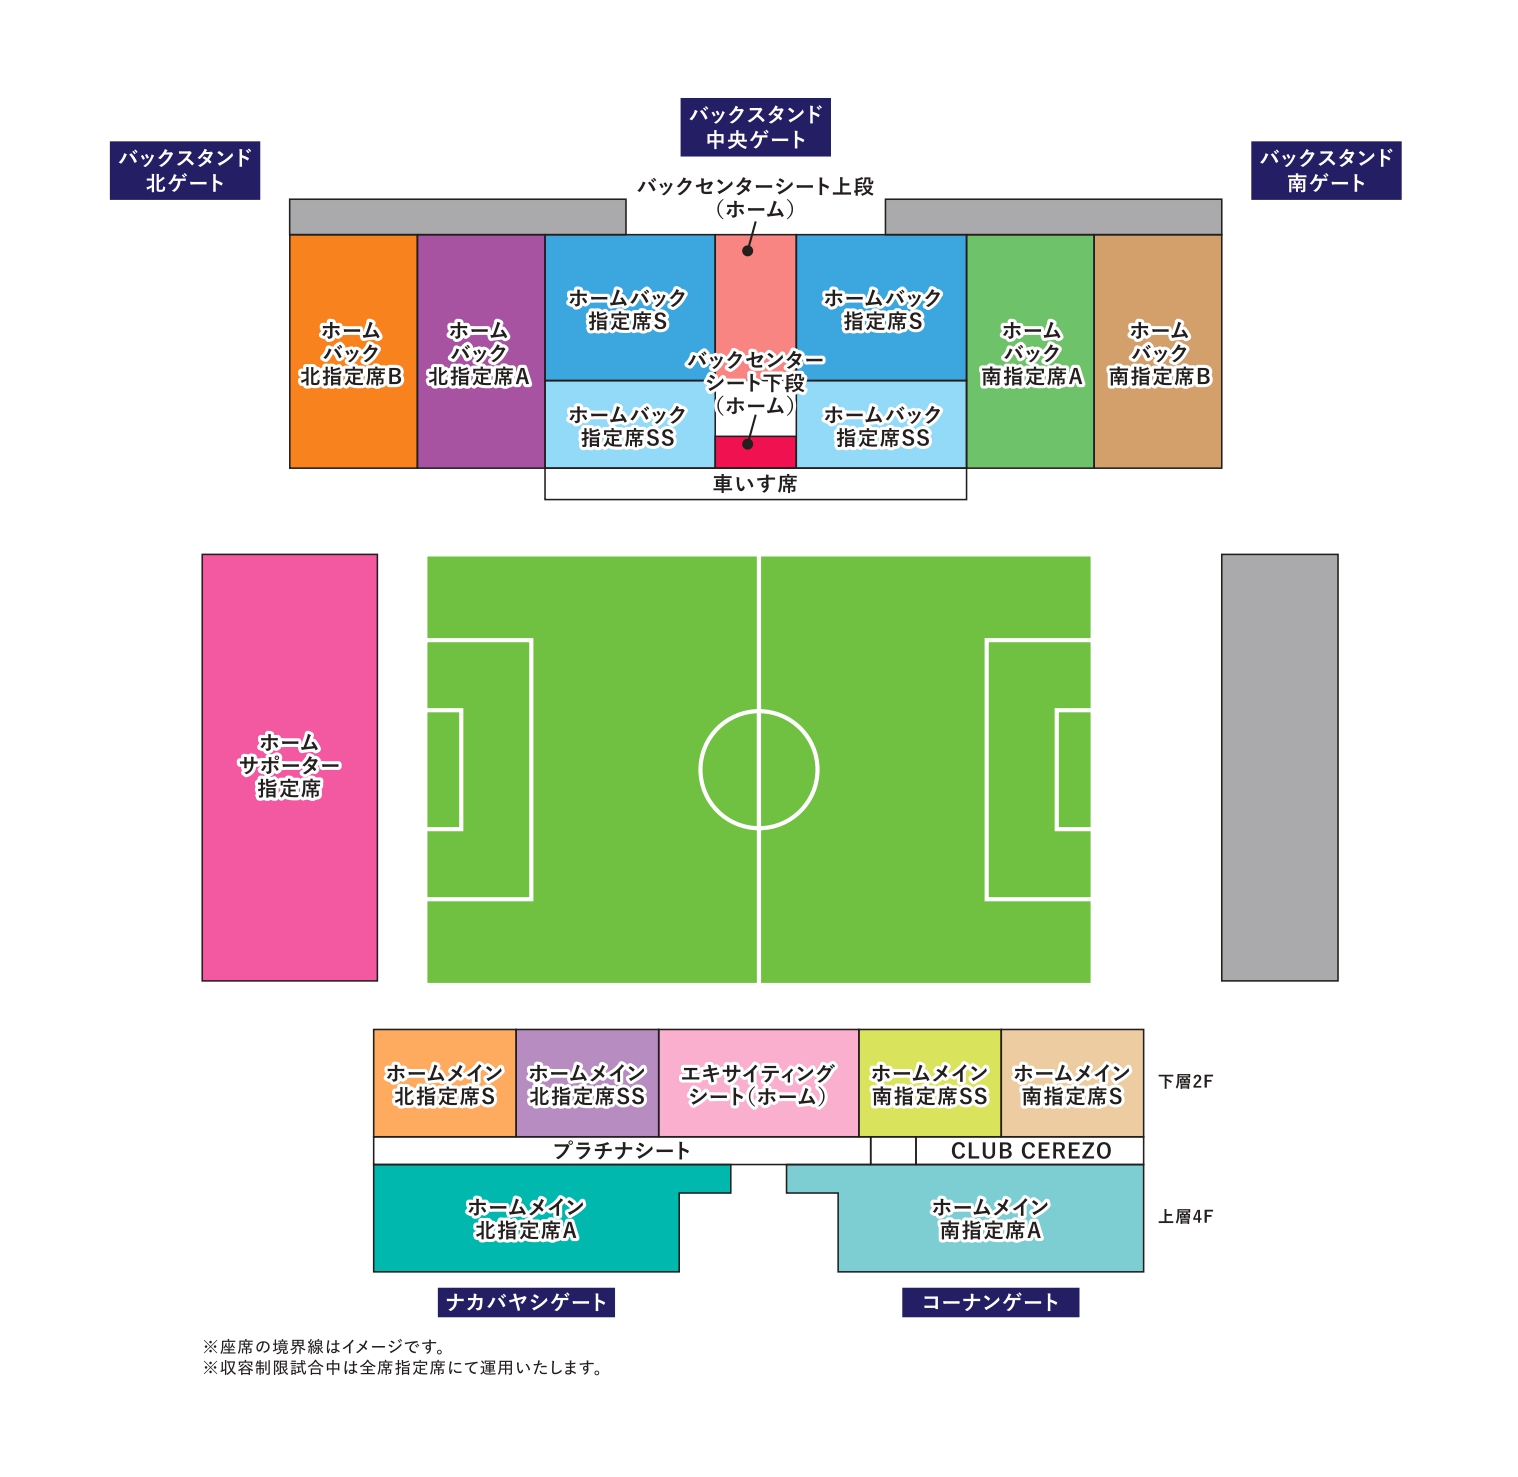 10 10 浦和戦 ホームゲーム 前売 一般チケット販売のお知らせ セレッソ大阪オフィシャルウェブサイト Cerezo Osaka